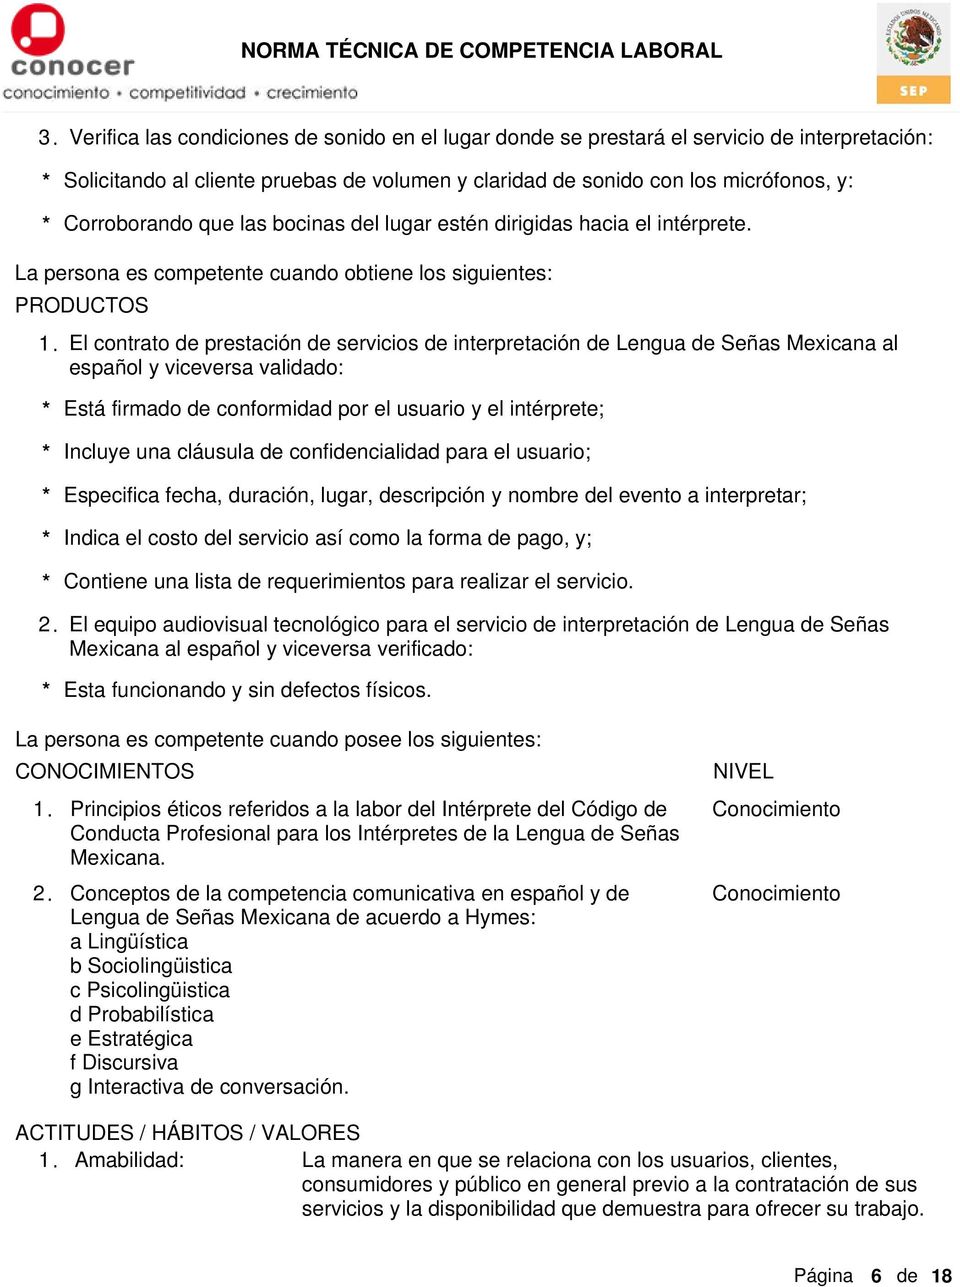 El contrato de prestación de servicios de interpretación de Lengua de Señas Mexicana al español y viceversa validado: * Está firmado de conformidad por el usuario y el intérprete; * Incluye una